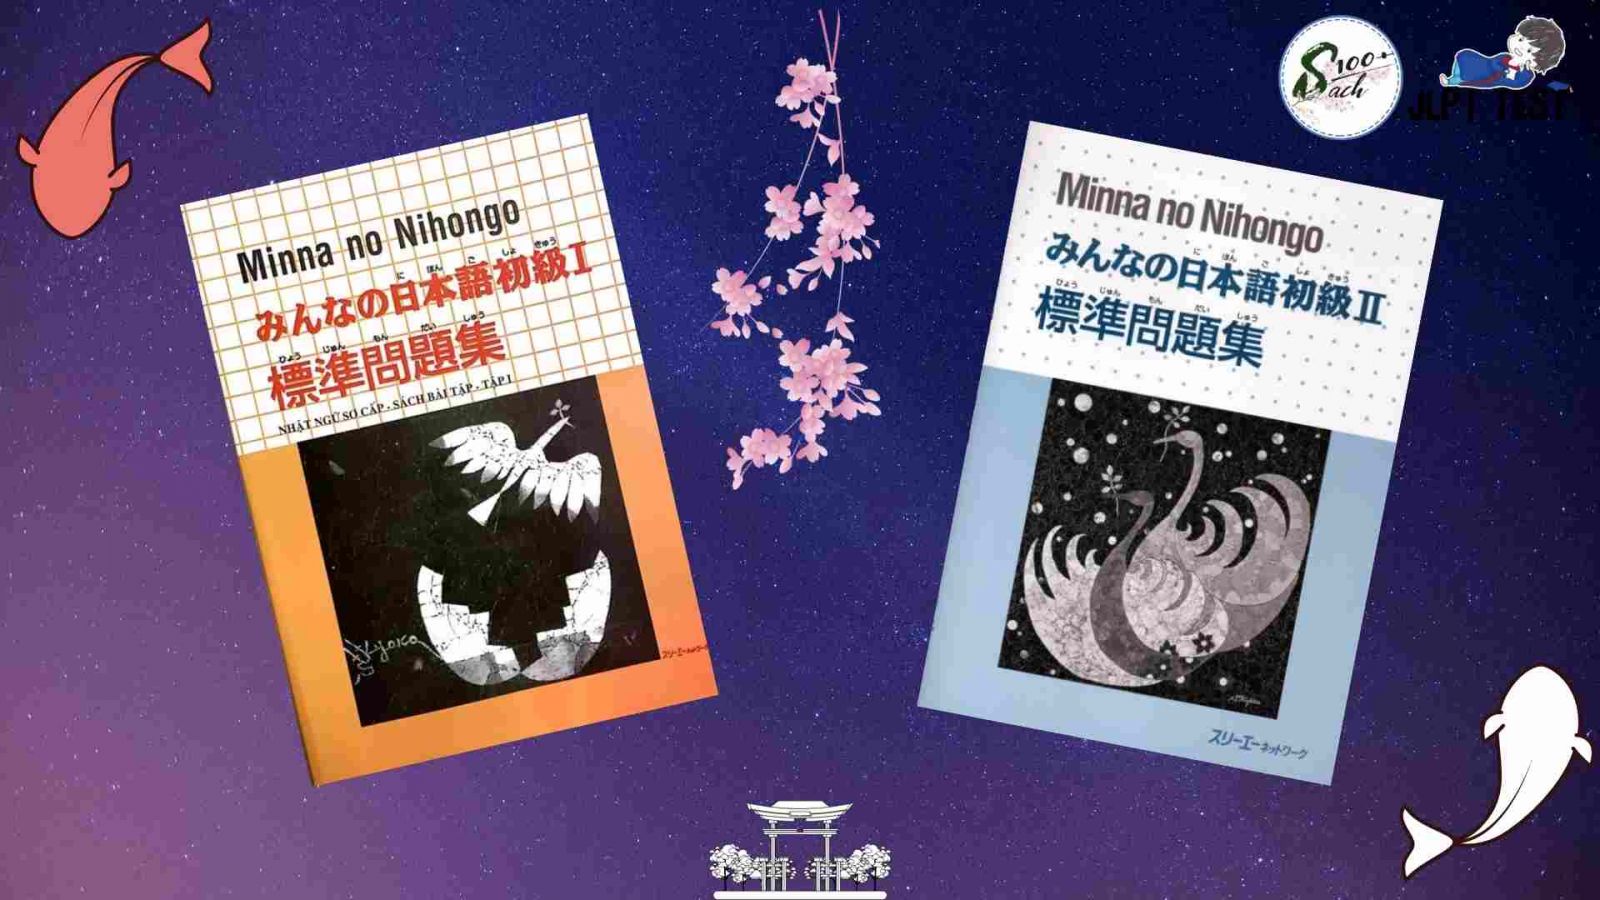 Download Trọn Bộ Giao Trinh Minna No Nihongo Pdf